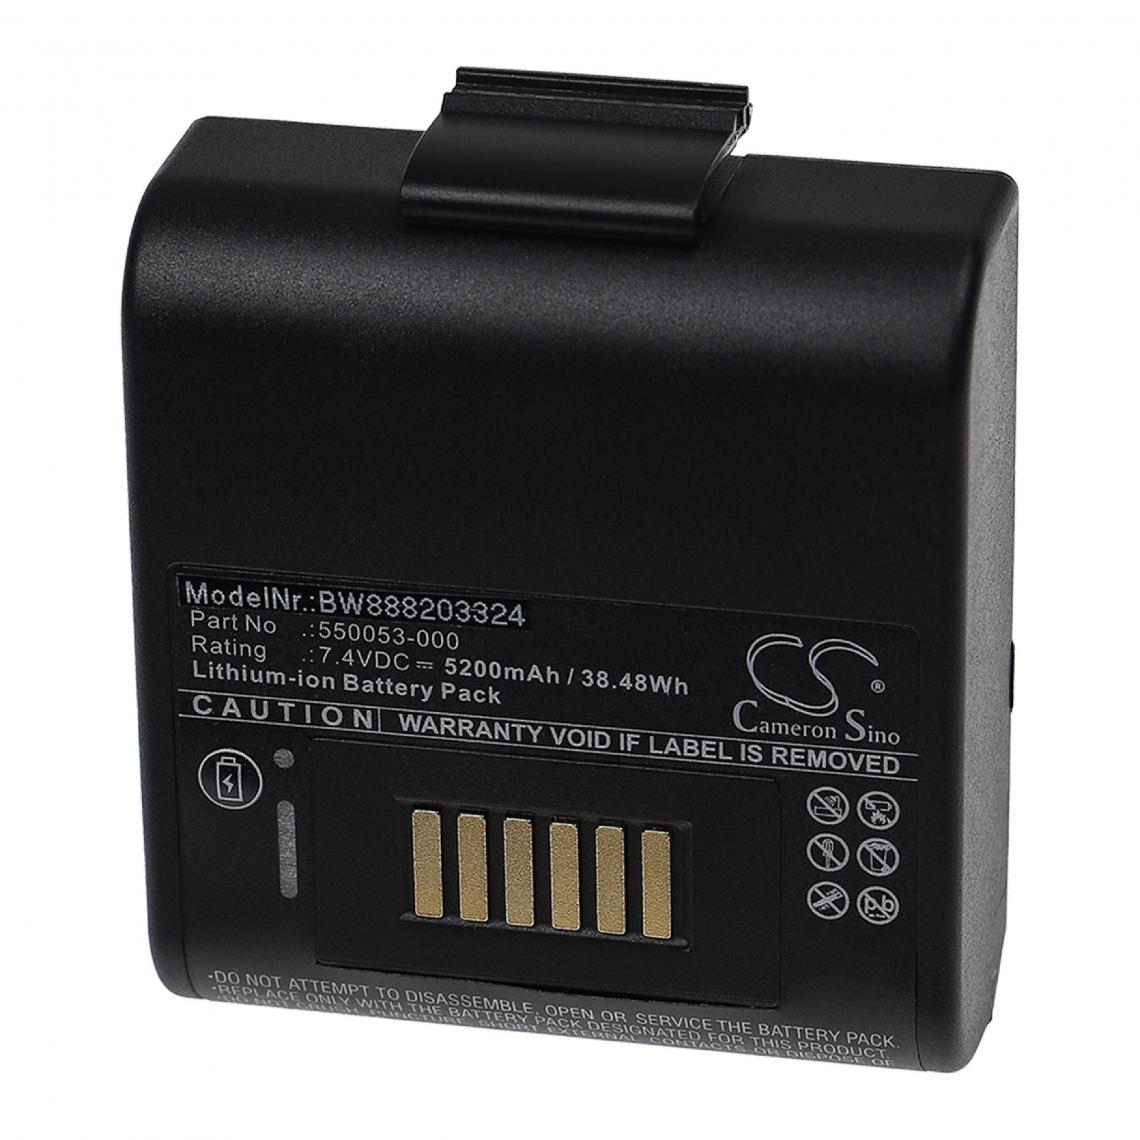 Vhbw - vhbw Batterie compatible avec ONeil RP4 imprimante, scanner, imprimante d'étiquettes (5200mAh, 7,4V, Li-ion) - Imprimante Jet d'encre